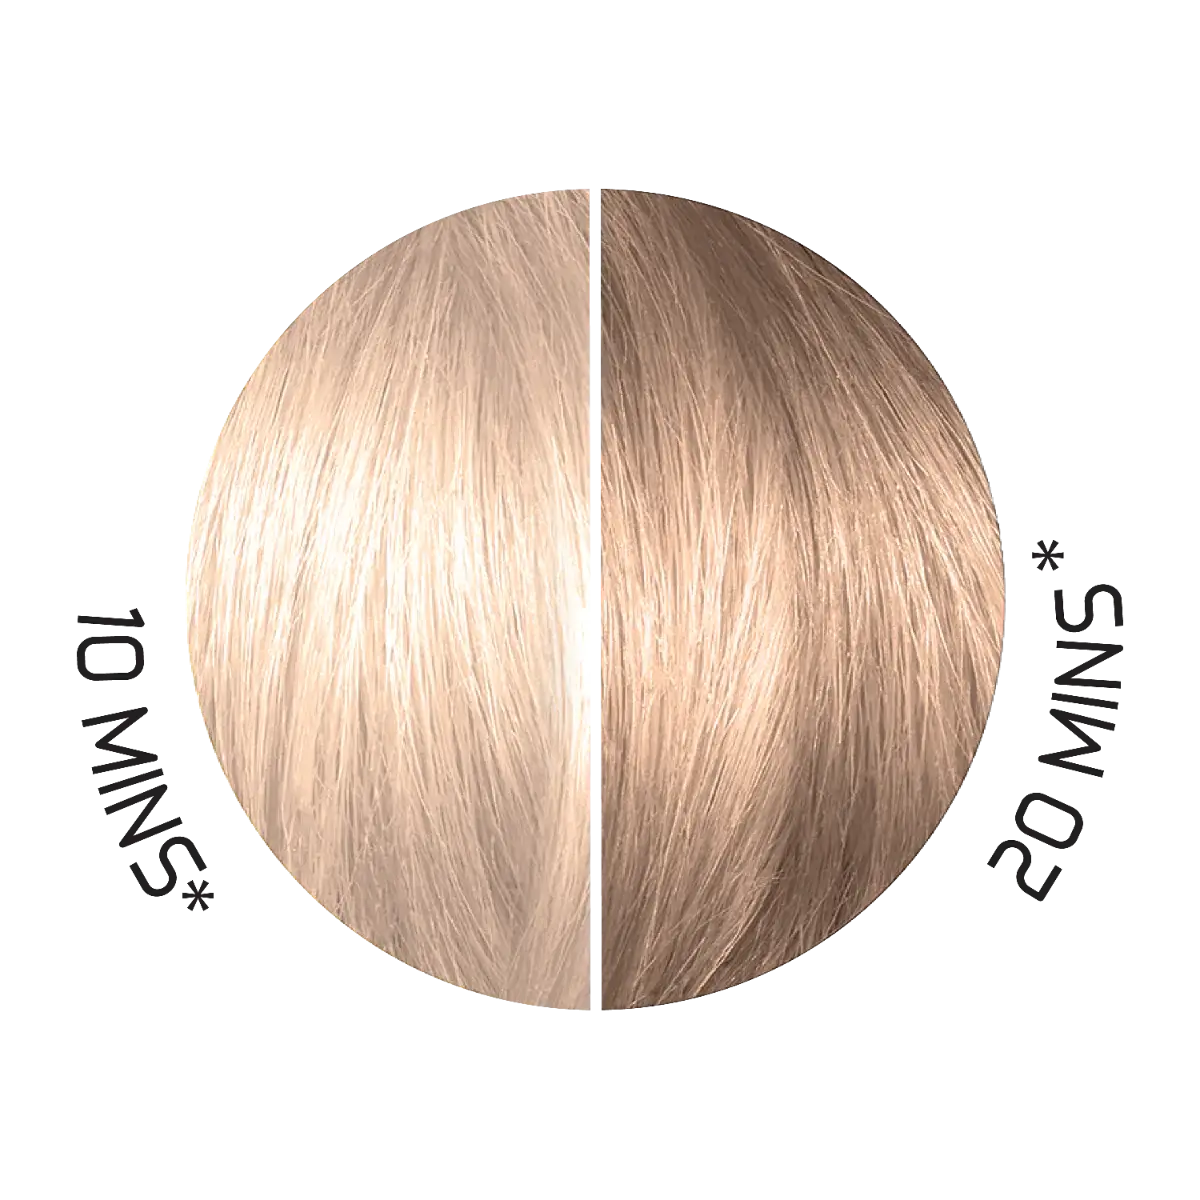 Swatch of Splat Hair Color&#39;s Toners Mushroom Brown Hair Dye